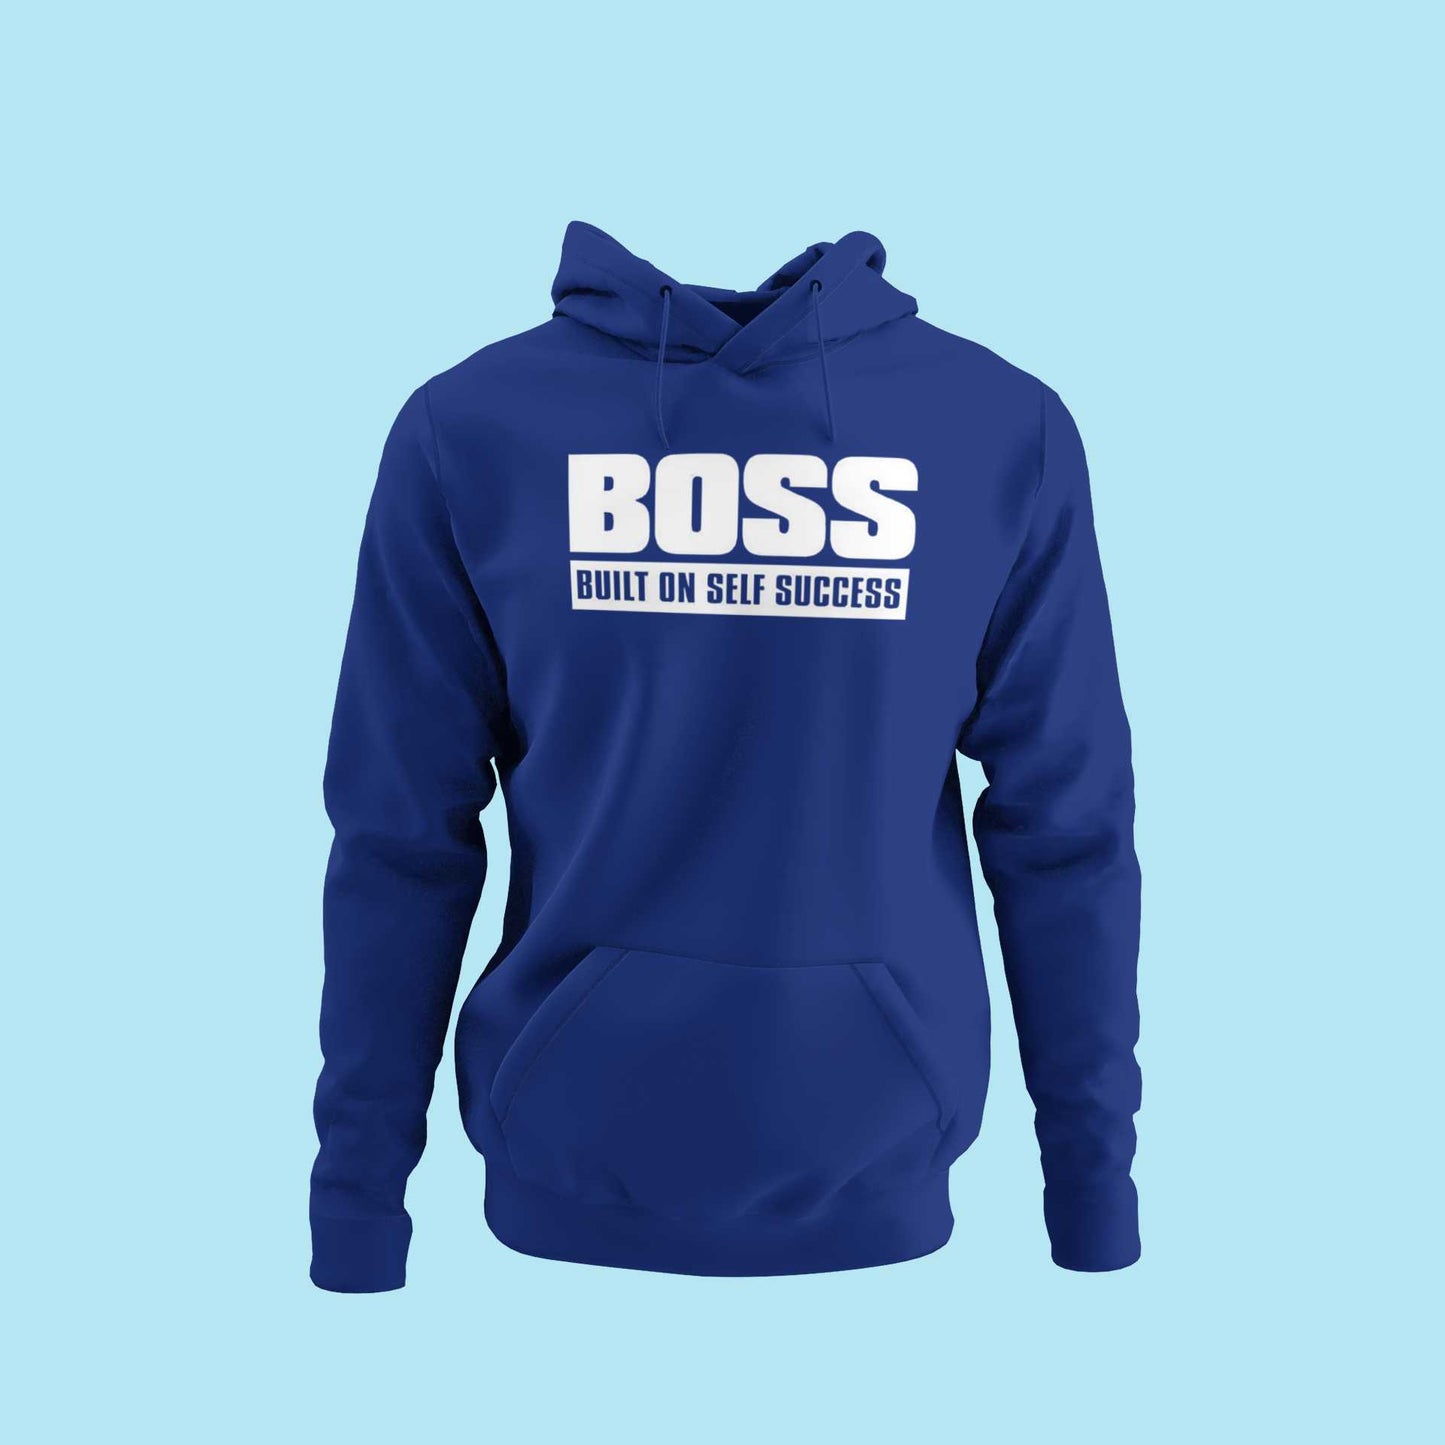 BOSS - Built On Self Success - Unisex Hoodie Strong Soul Hoodie